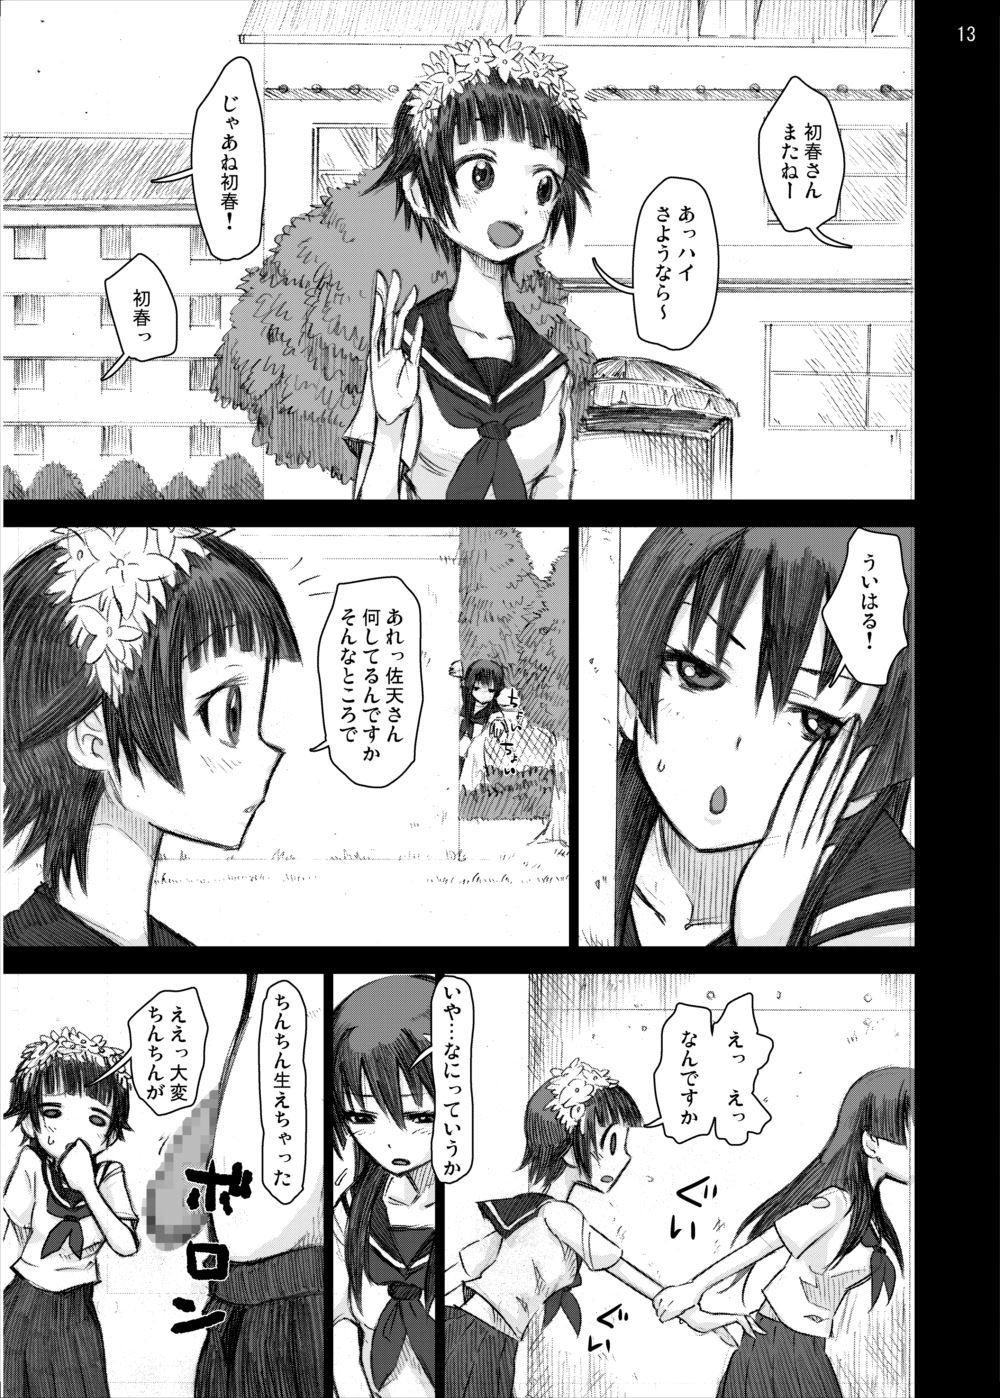 Cheat Ryoujoku Jigoku 4 - Futanari Stalker Rape... - Toaru kagaku no railgun Twinkstudios - Page 12